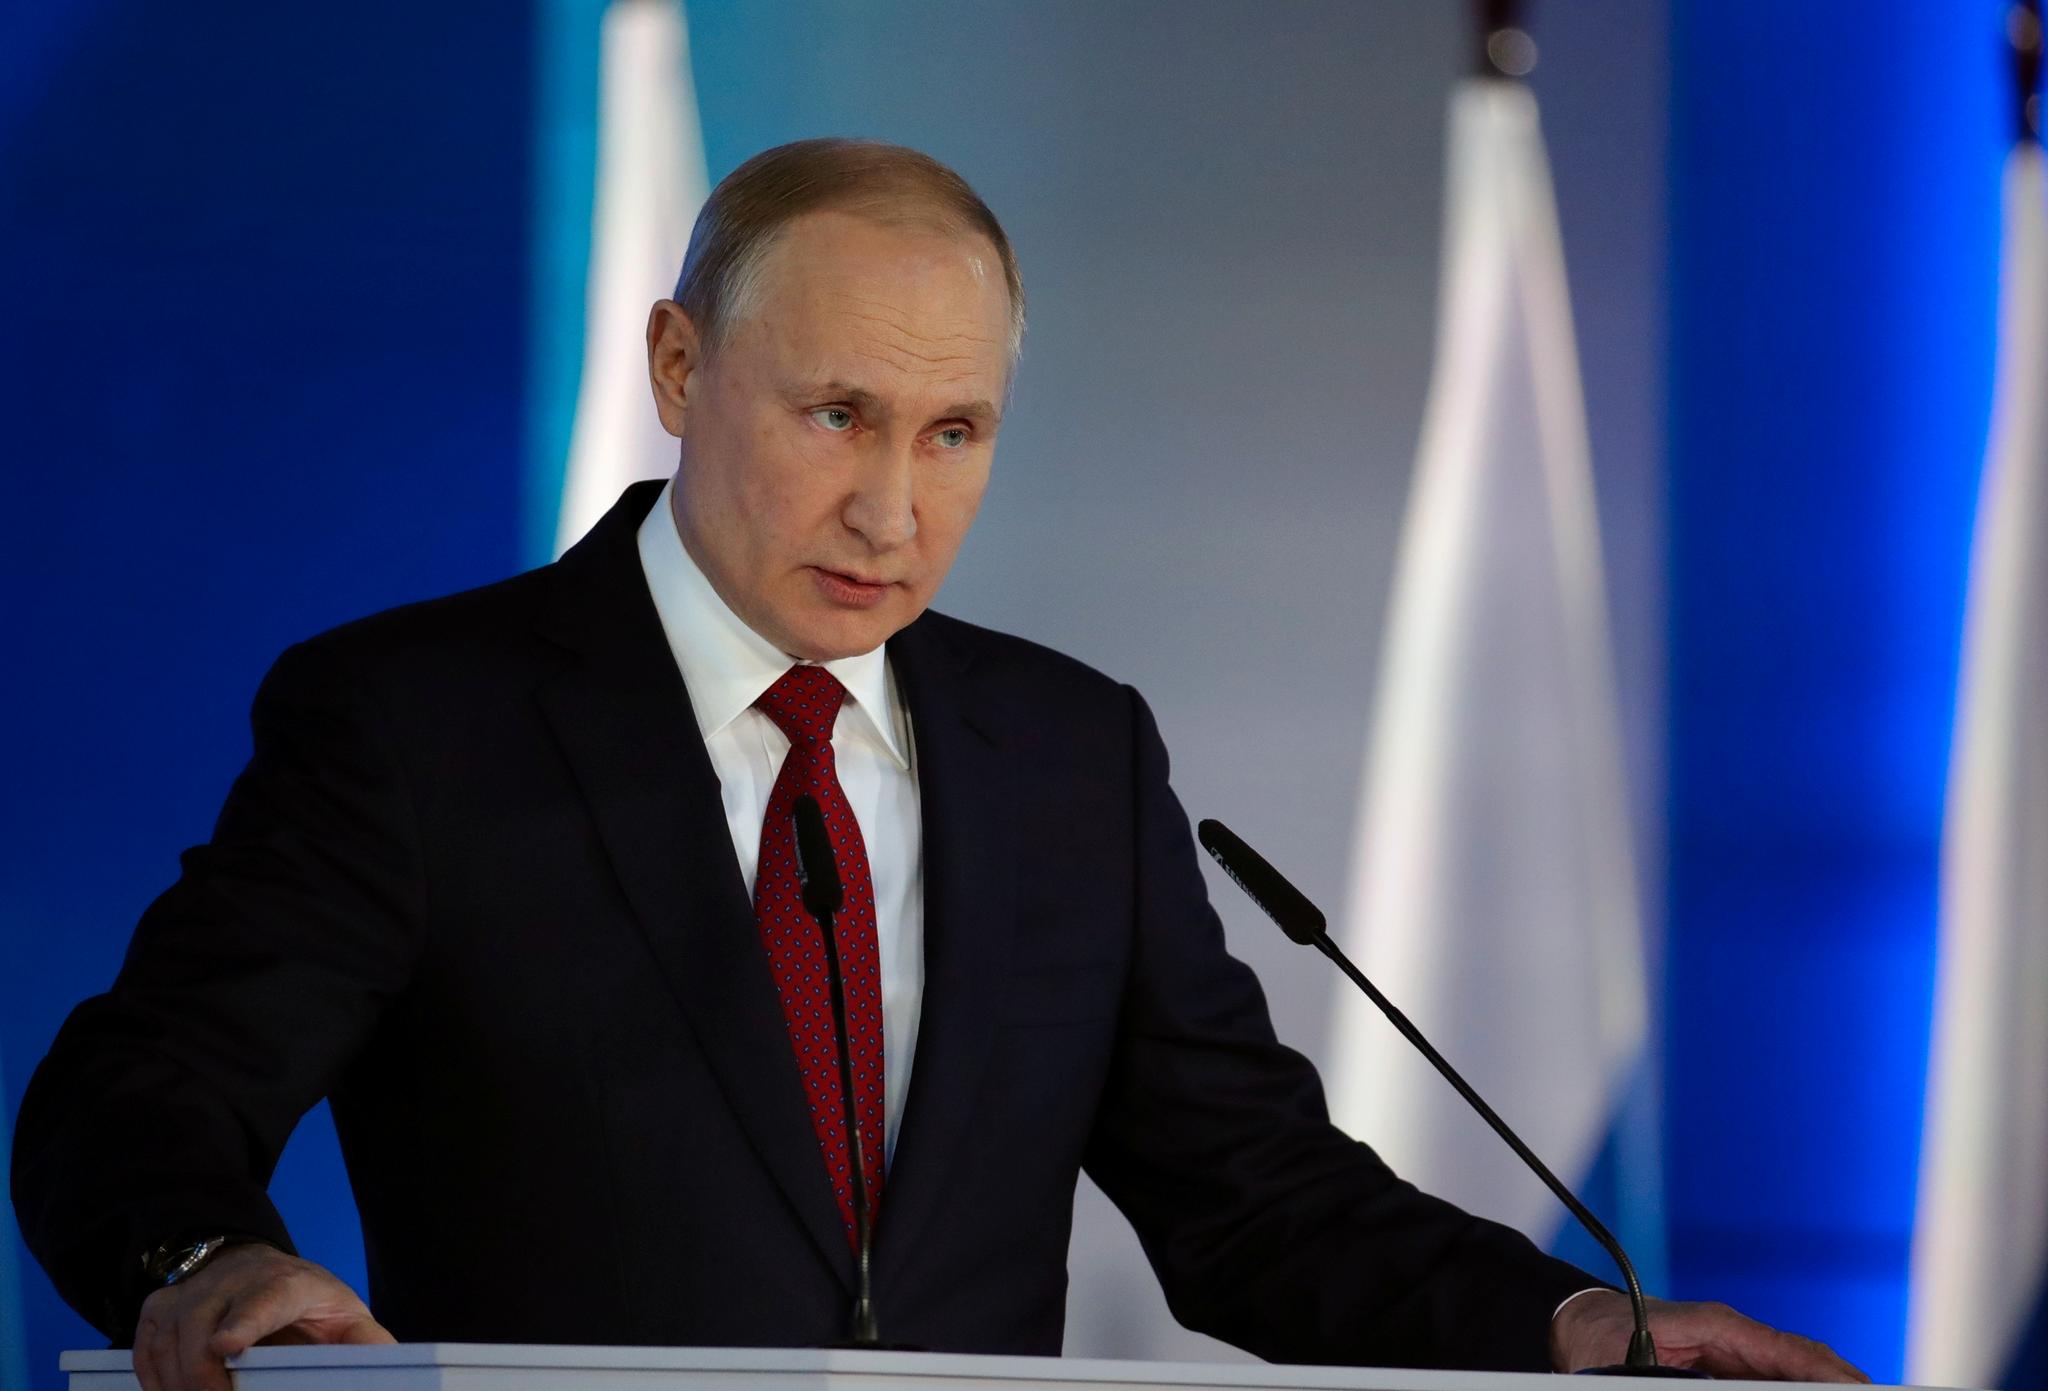 Russlands president Vladimir Putin varsler store grunnlovsreformer. Bak ligger Russlands store økonomiske system, som dagens russiske politiske maktapparat ikke klarer å løse.